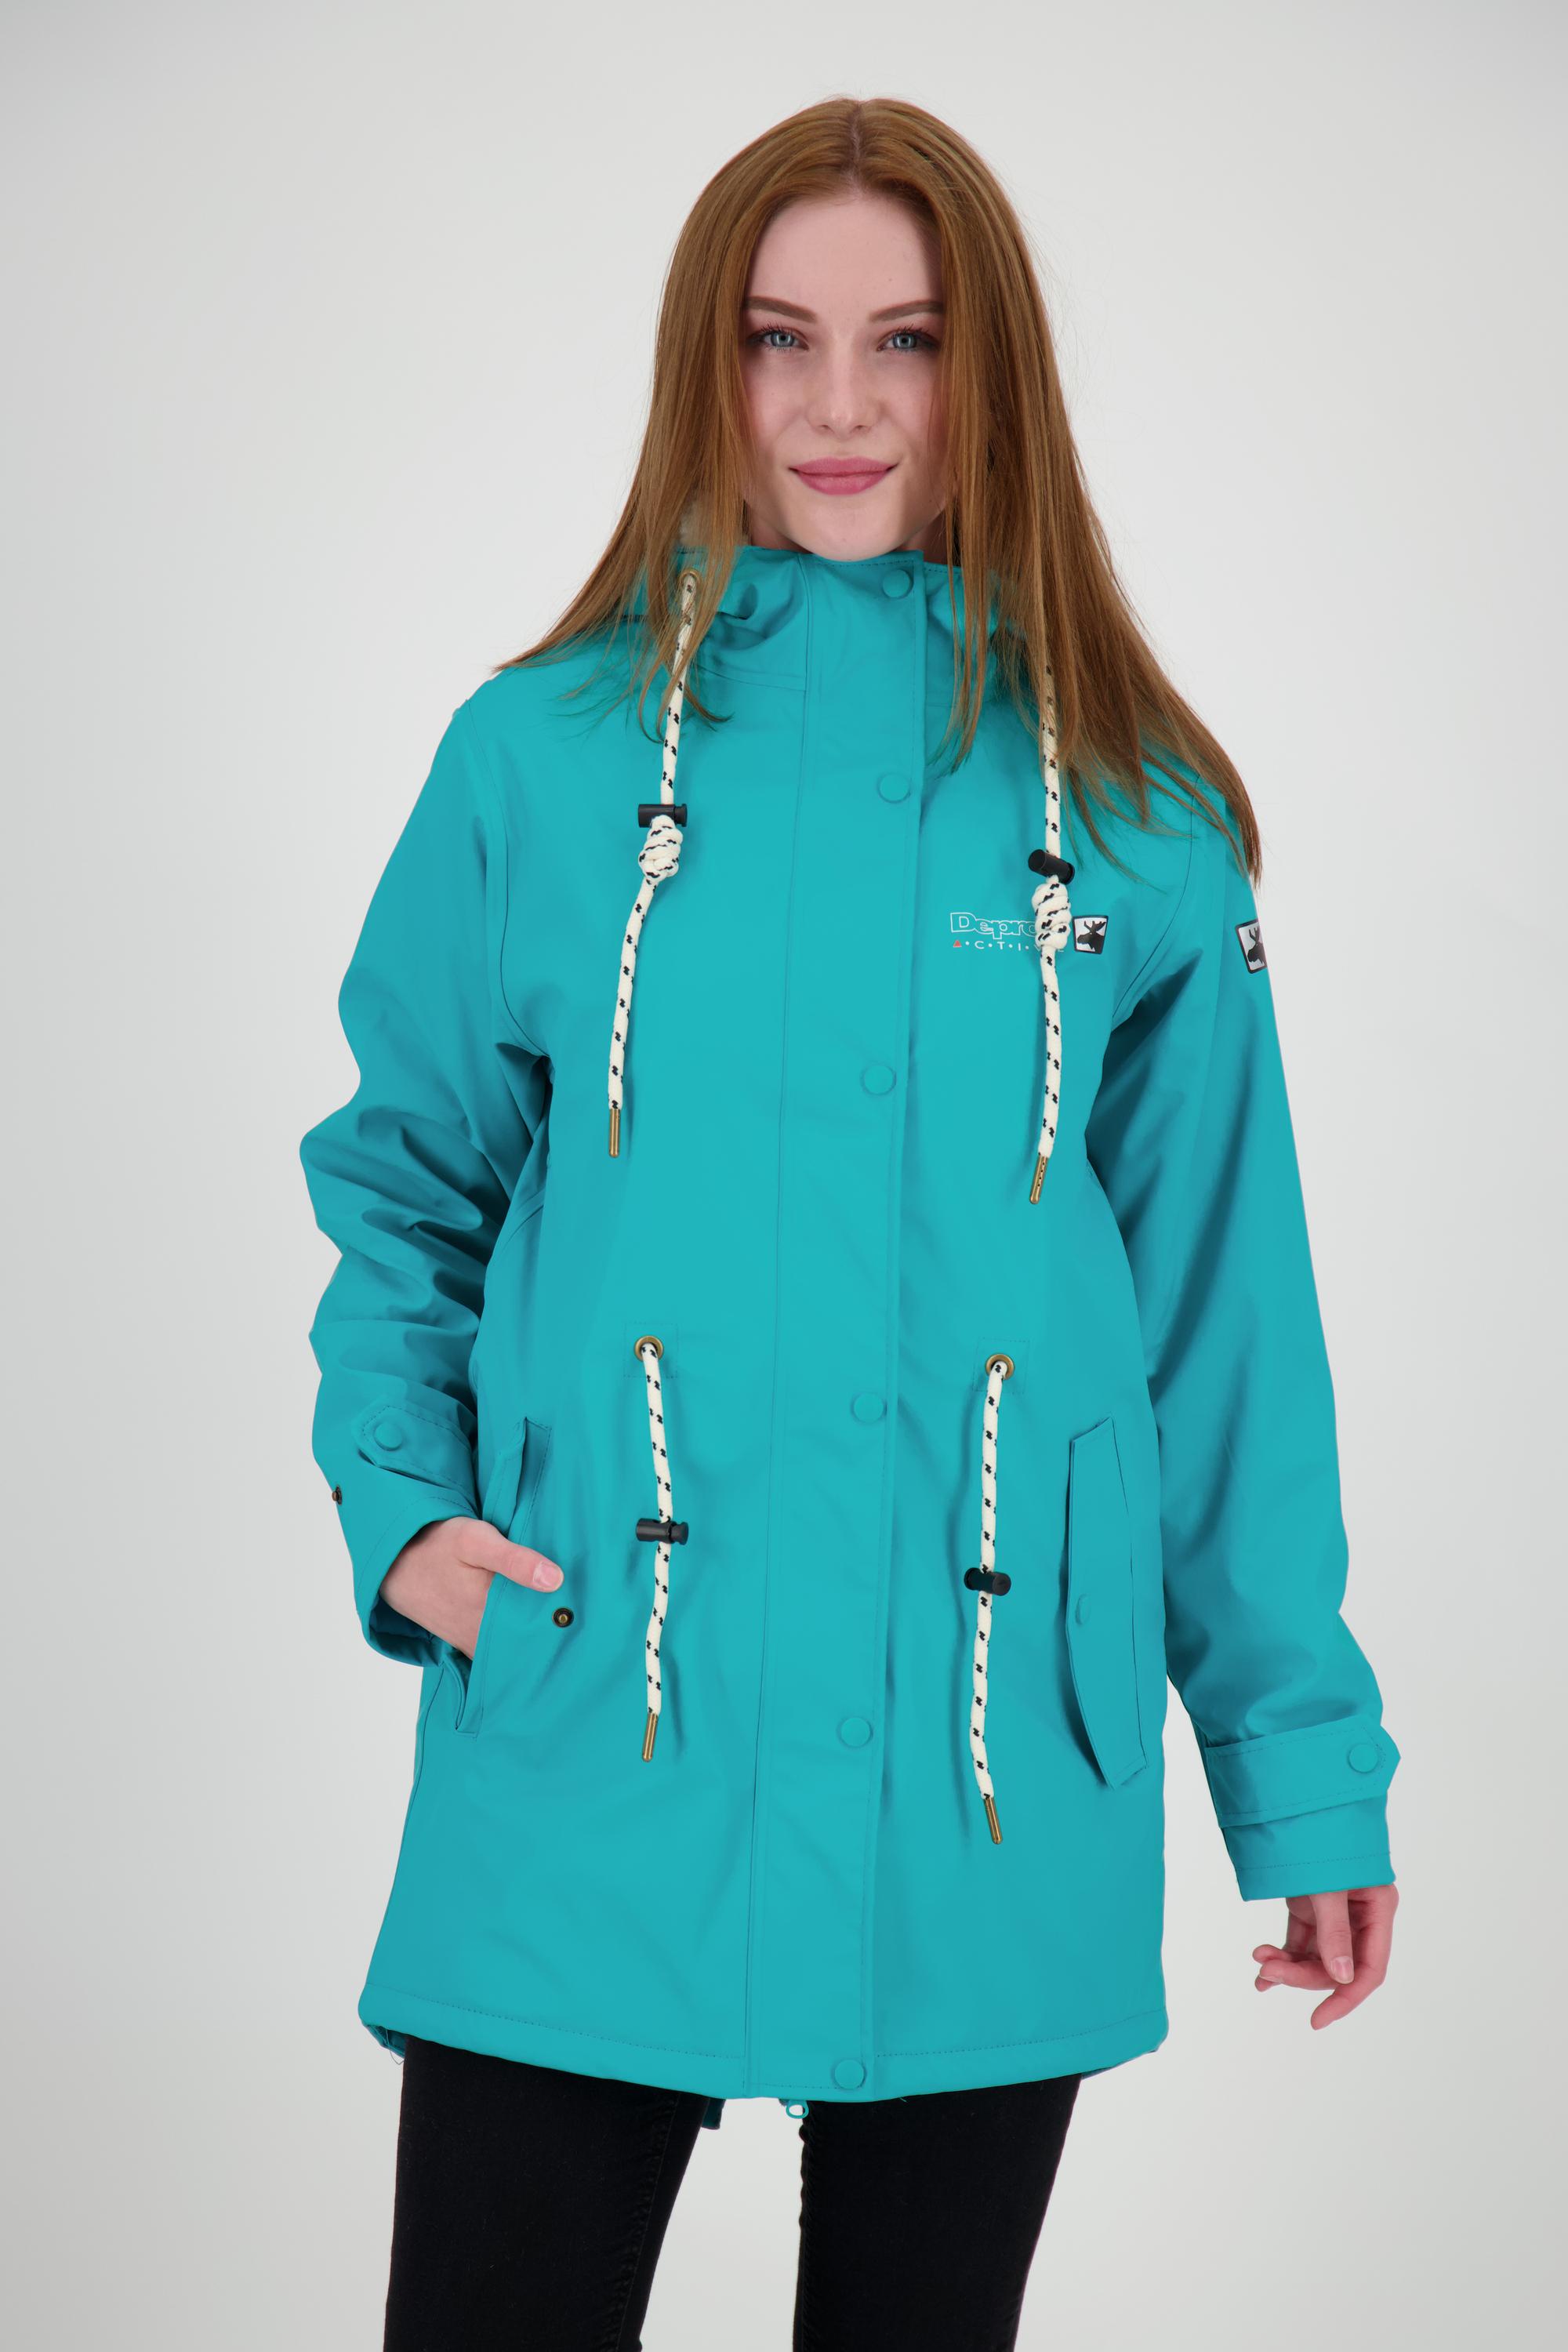 ELLESMERE Regenjacke kaufen von turquoise active Friesennerz Damen DEPROC Shop im WOMEN SportScheck Online